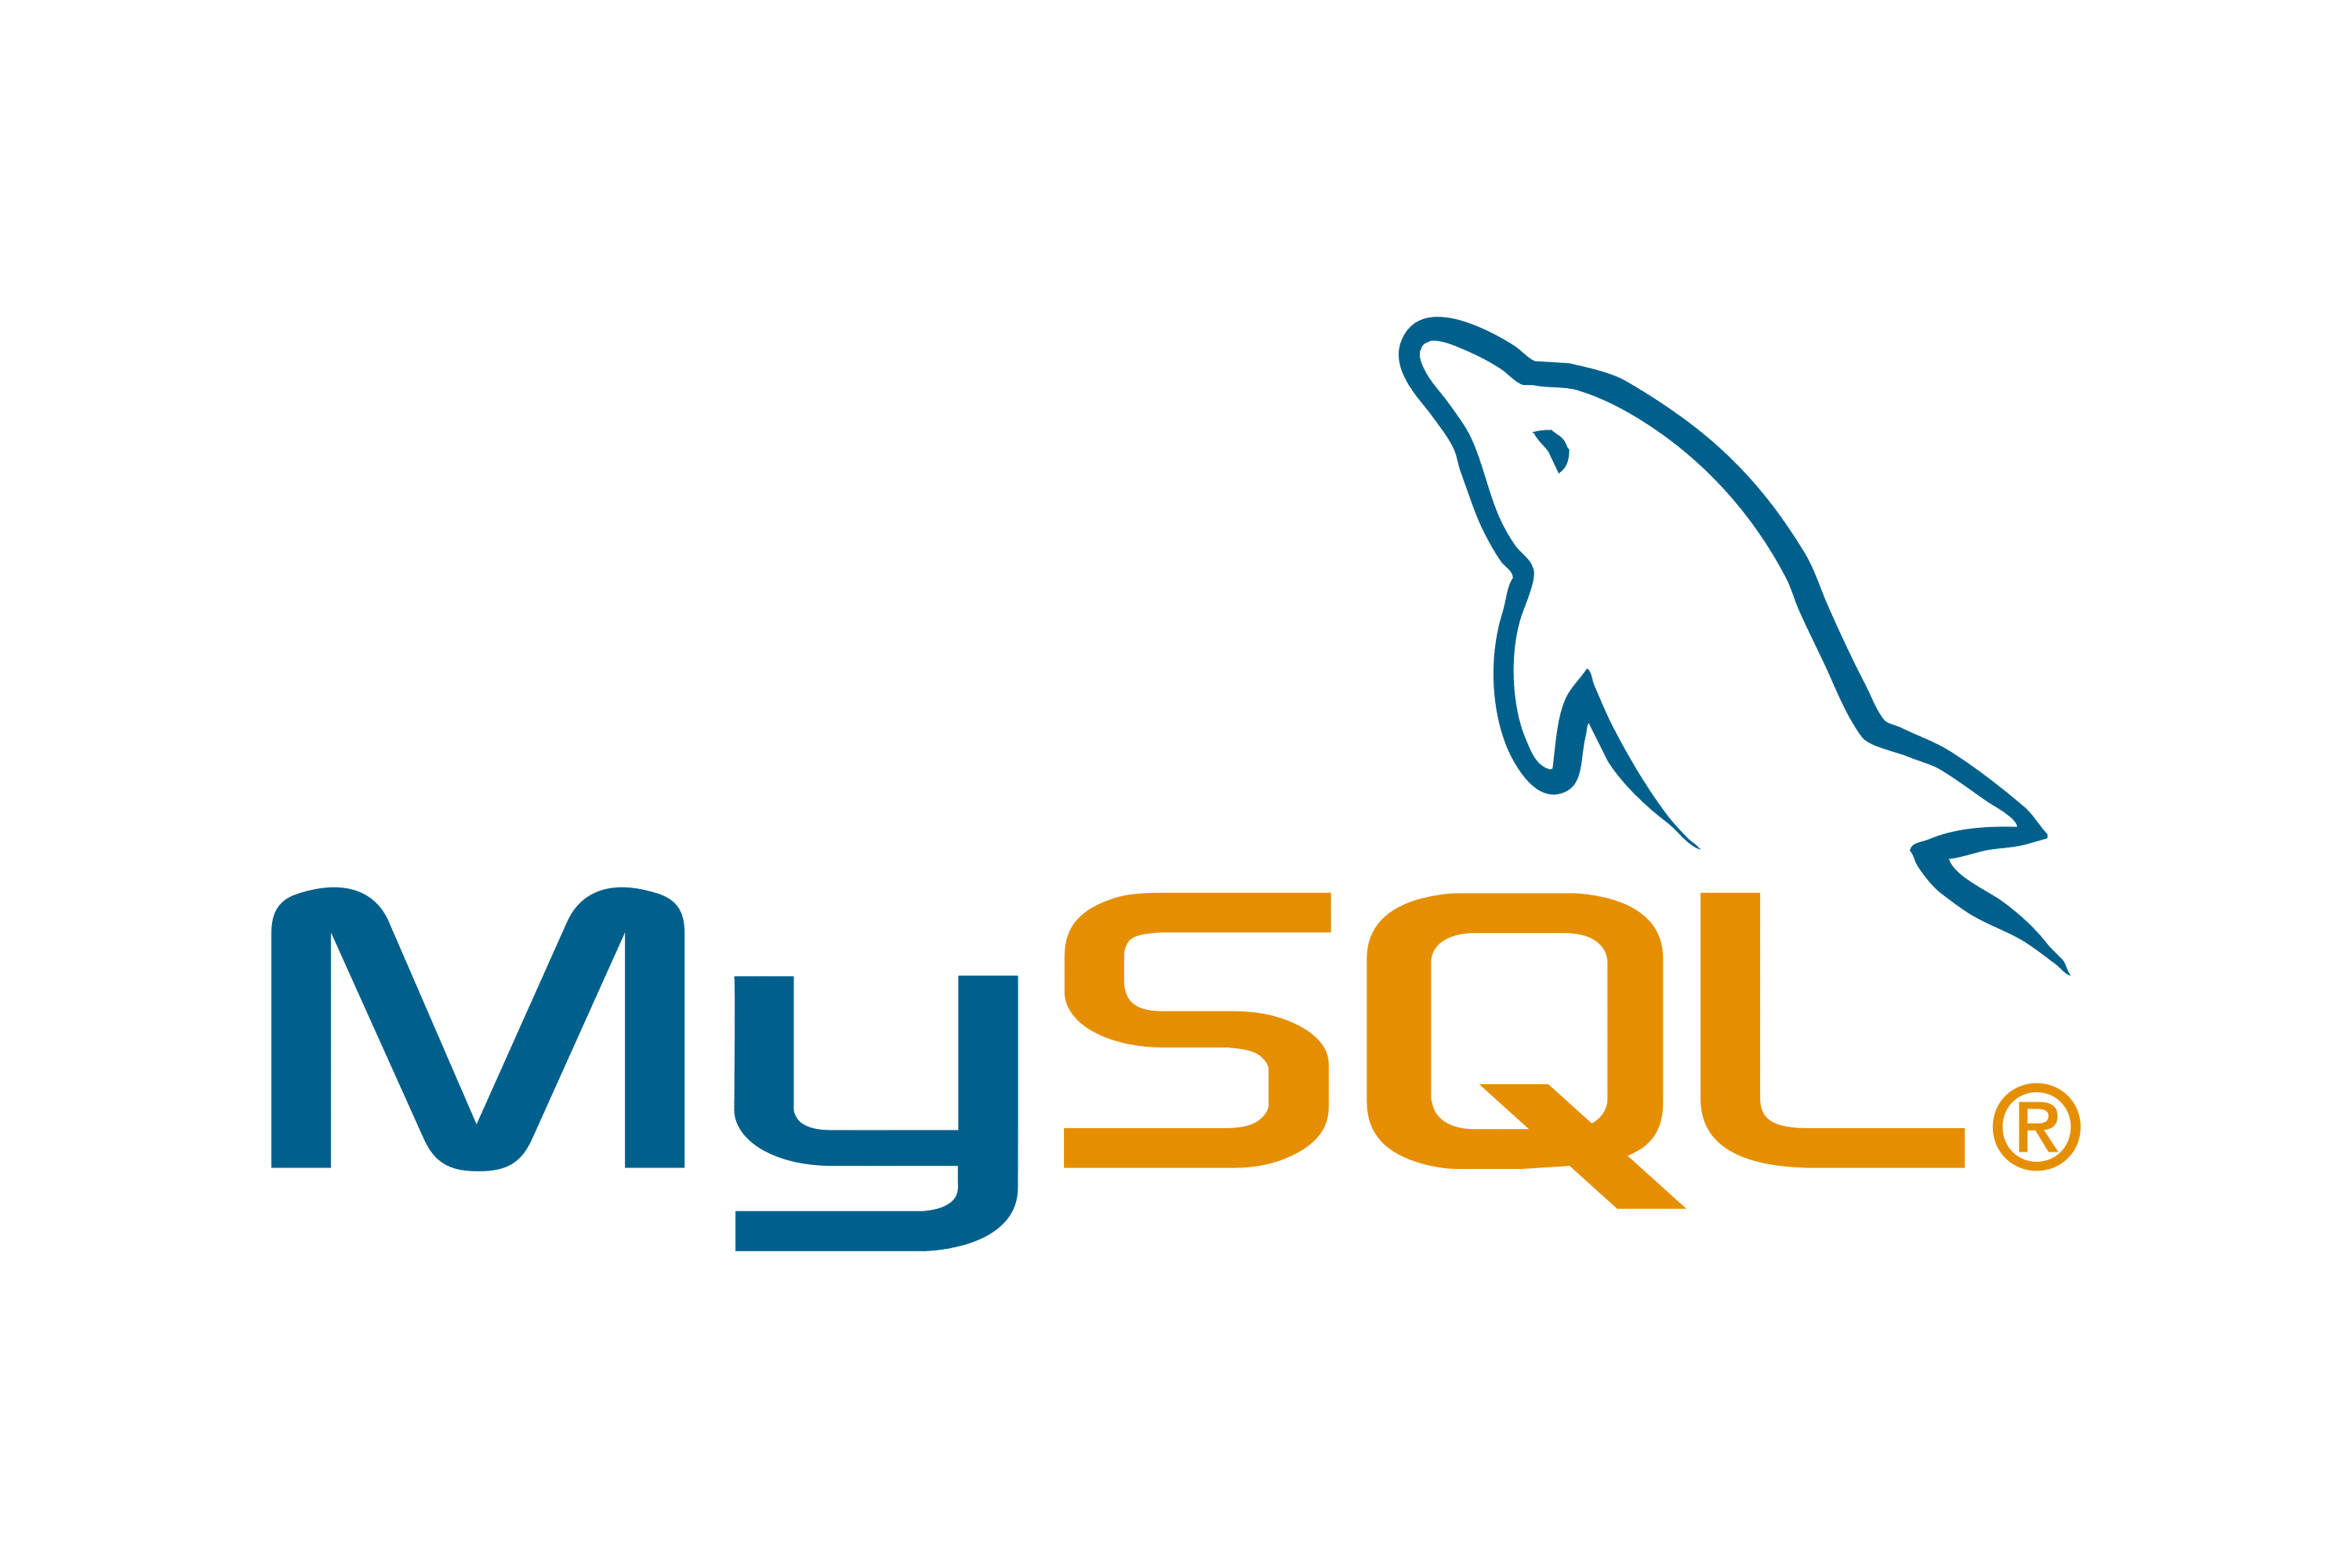 Das MySQL-Logo, das den Text unter einem gekippten, stilisierten blauen Delfinkörper zeigt